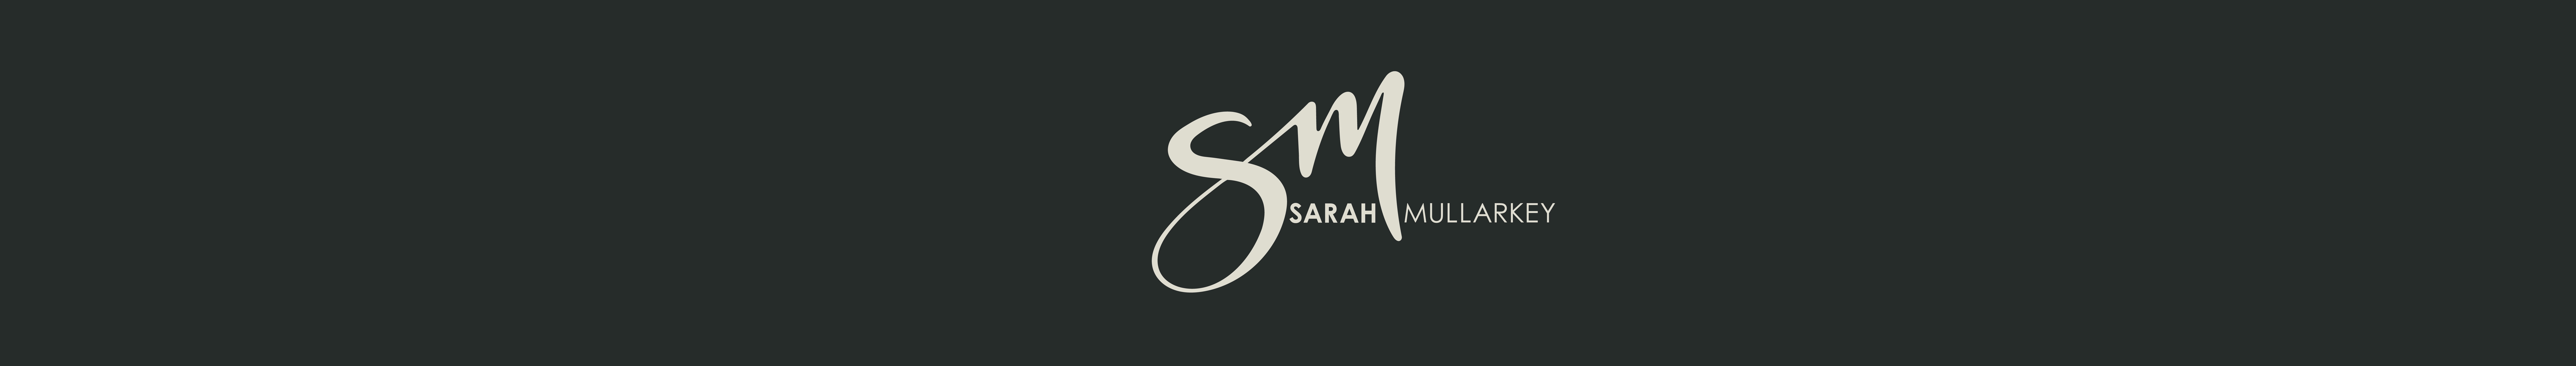 Sarah Mullarkey profil başlığı